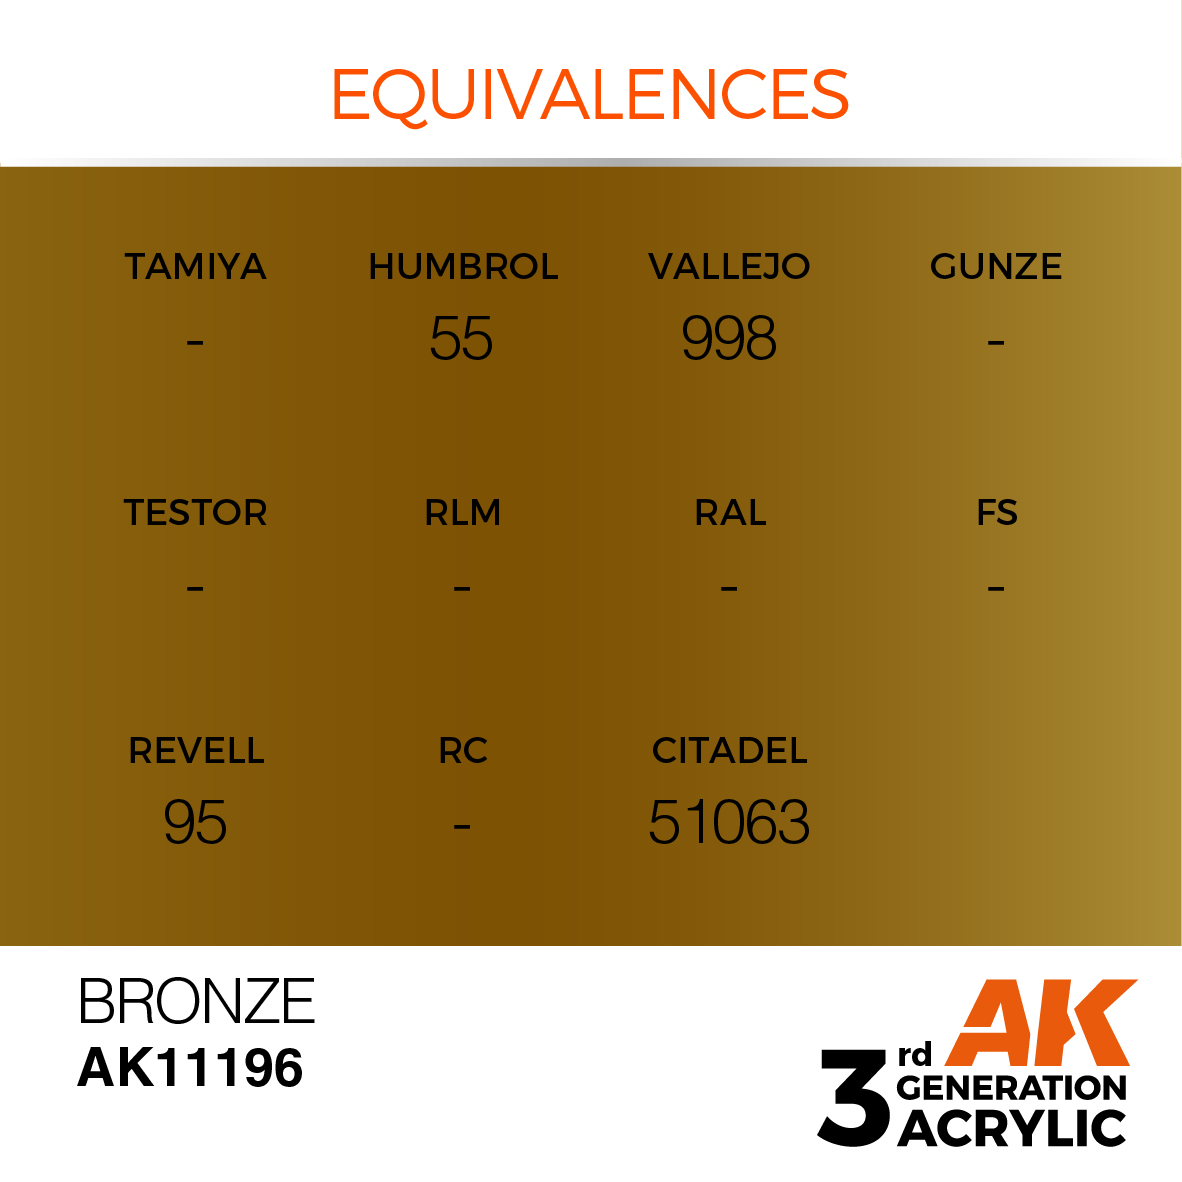 AK11196 Bronze (3rd-Generation) (17mL)